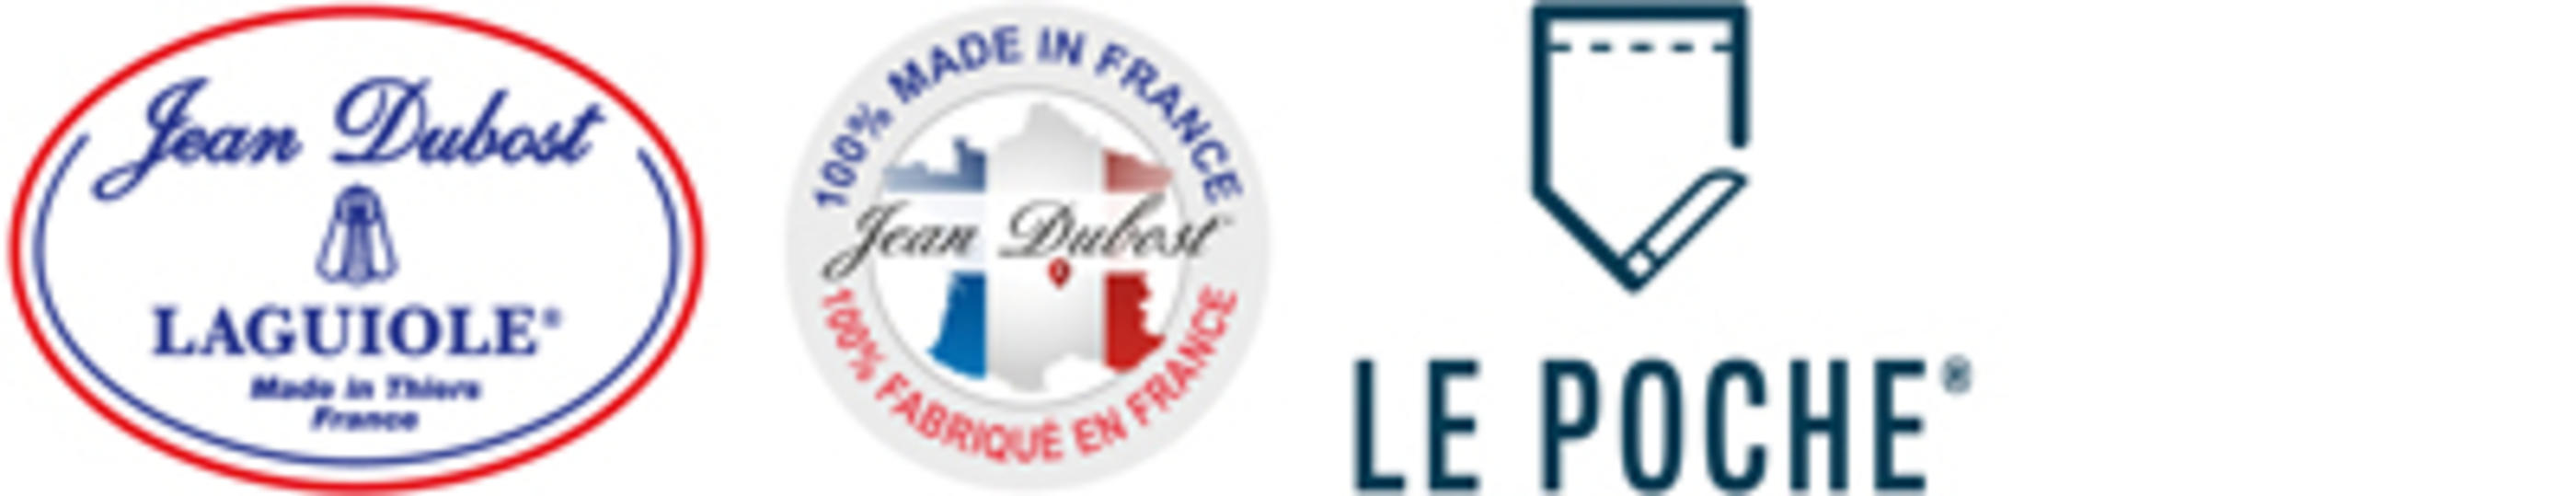 logo Jean Dubost JDL-CF-LP1-400x77px